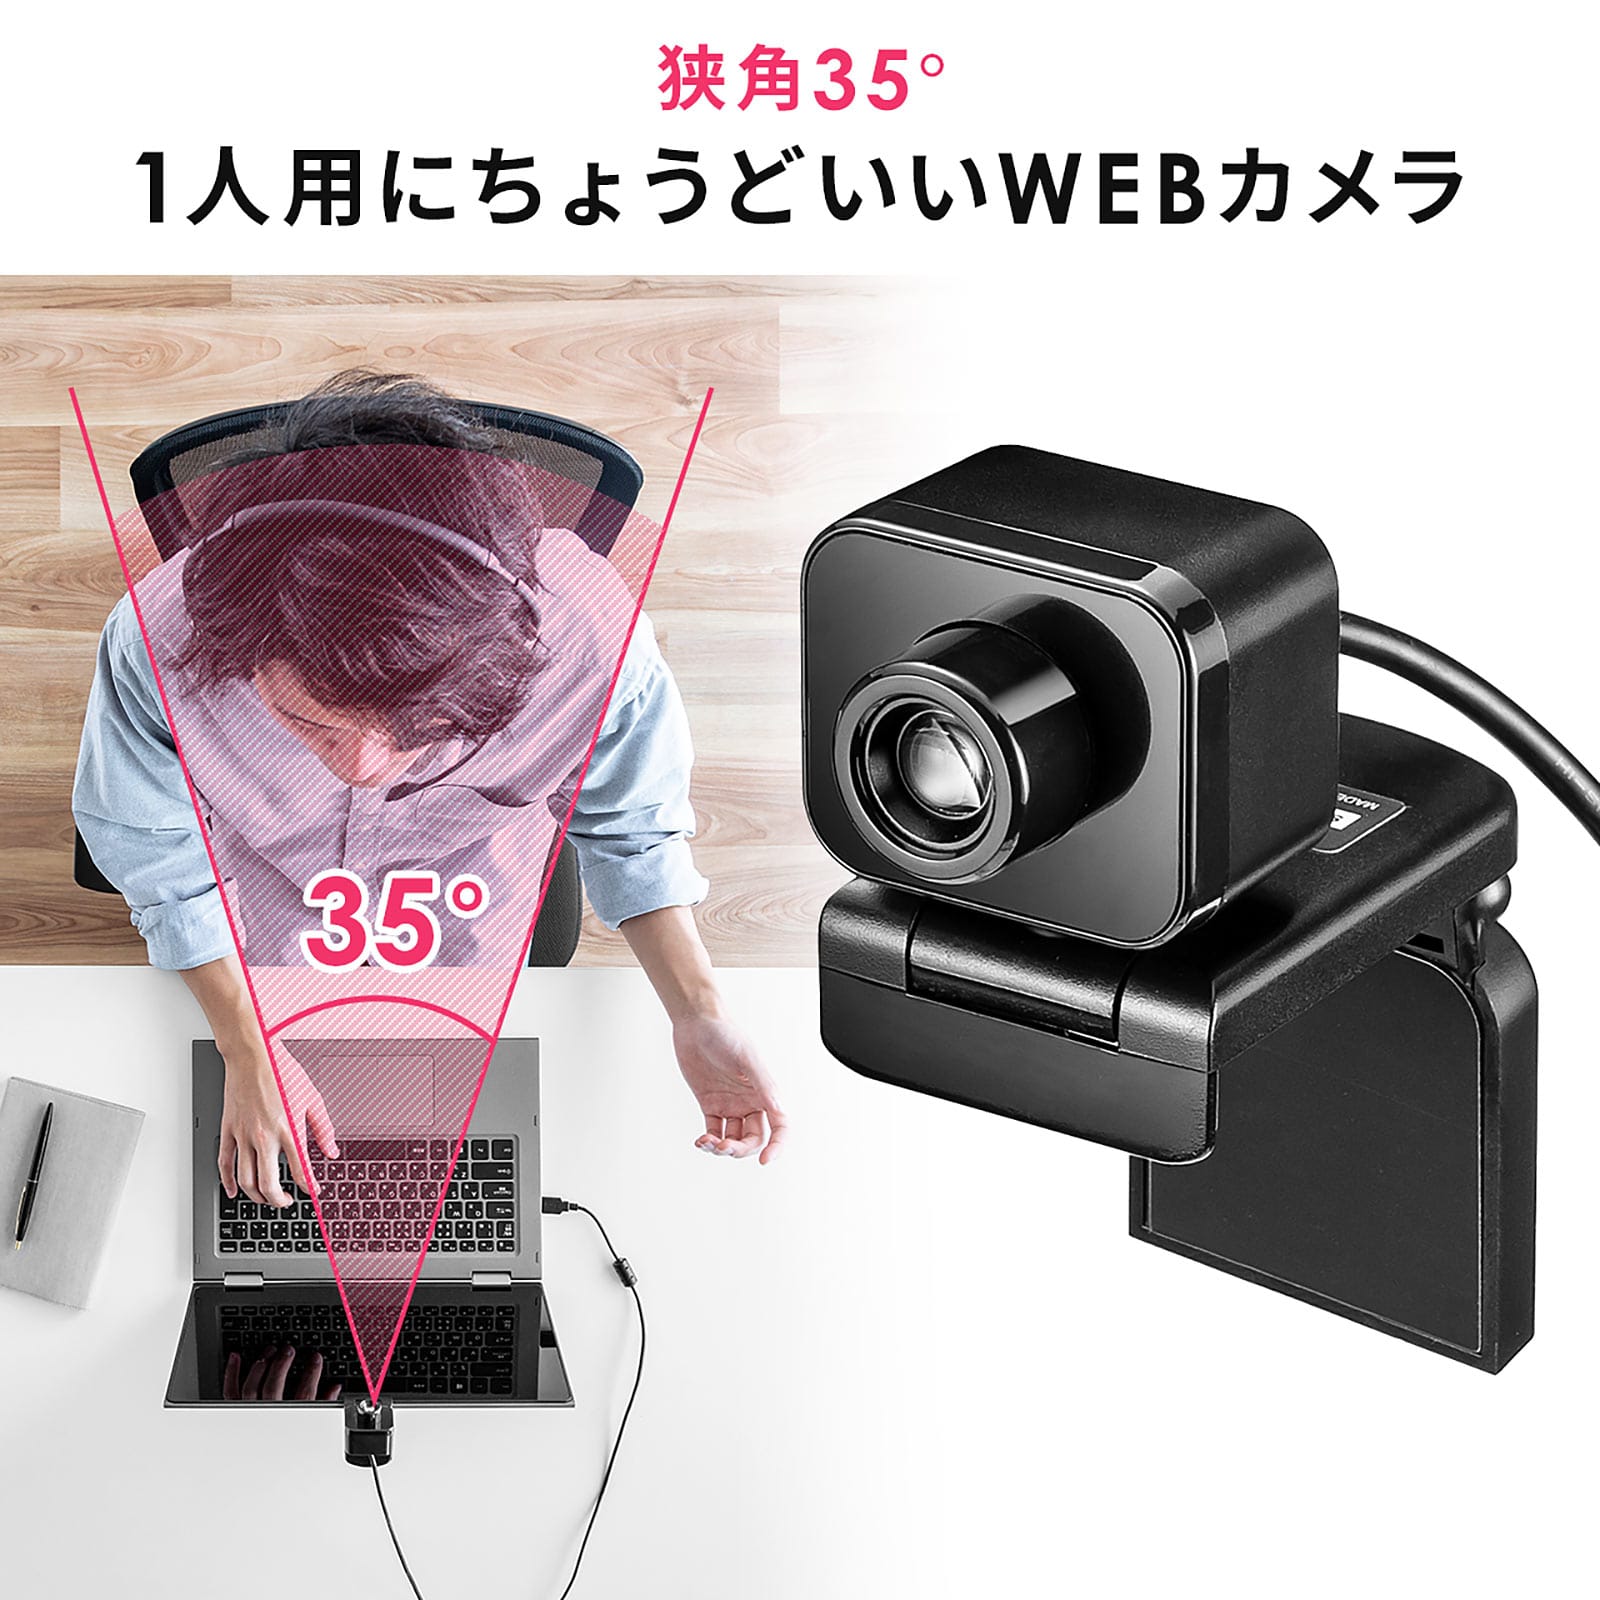 サンワサプライ、水平画角35°の1人用ウェブカメラを発売